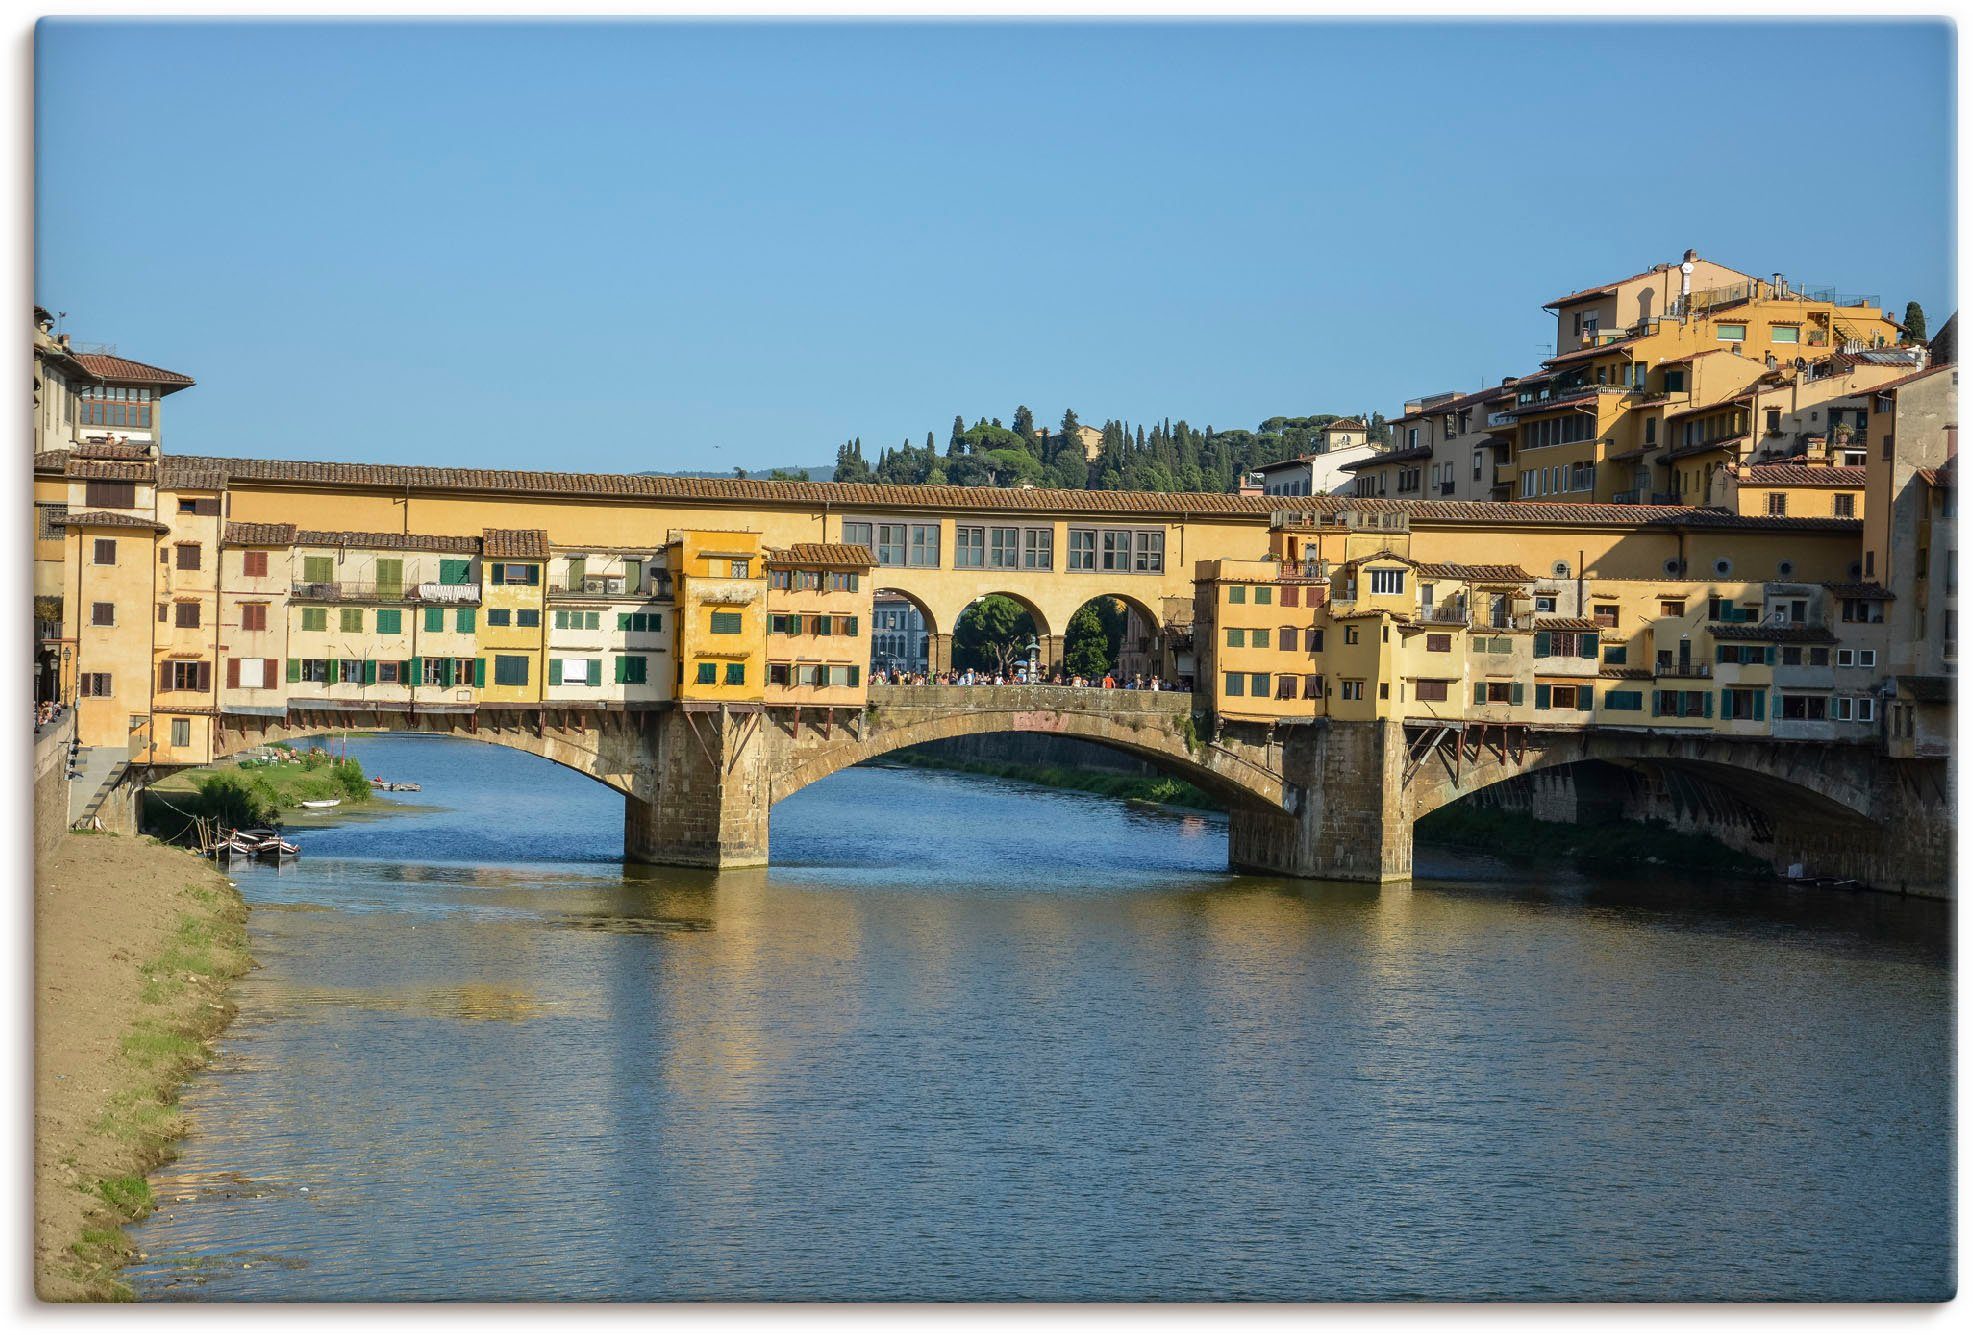 Artland Artprint Brücke Ponte Vecchio in Florenz in vele afmetingen & productsoorten - artprint van aluminium / artprint voor buiten, artprint op linnen, poster, muursticker / wand